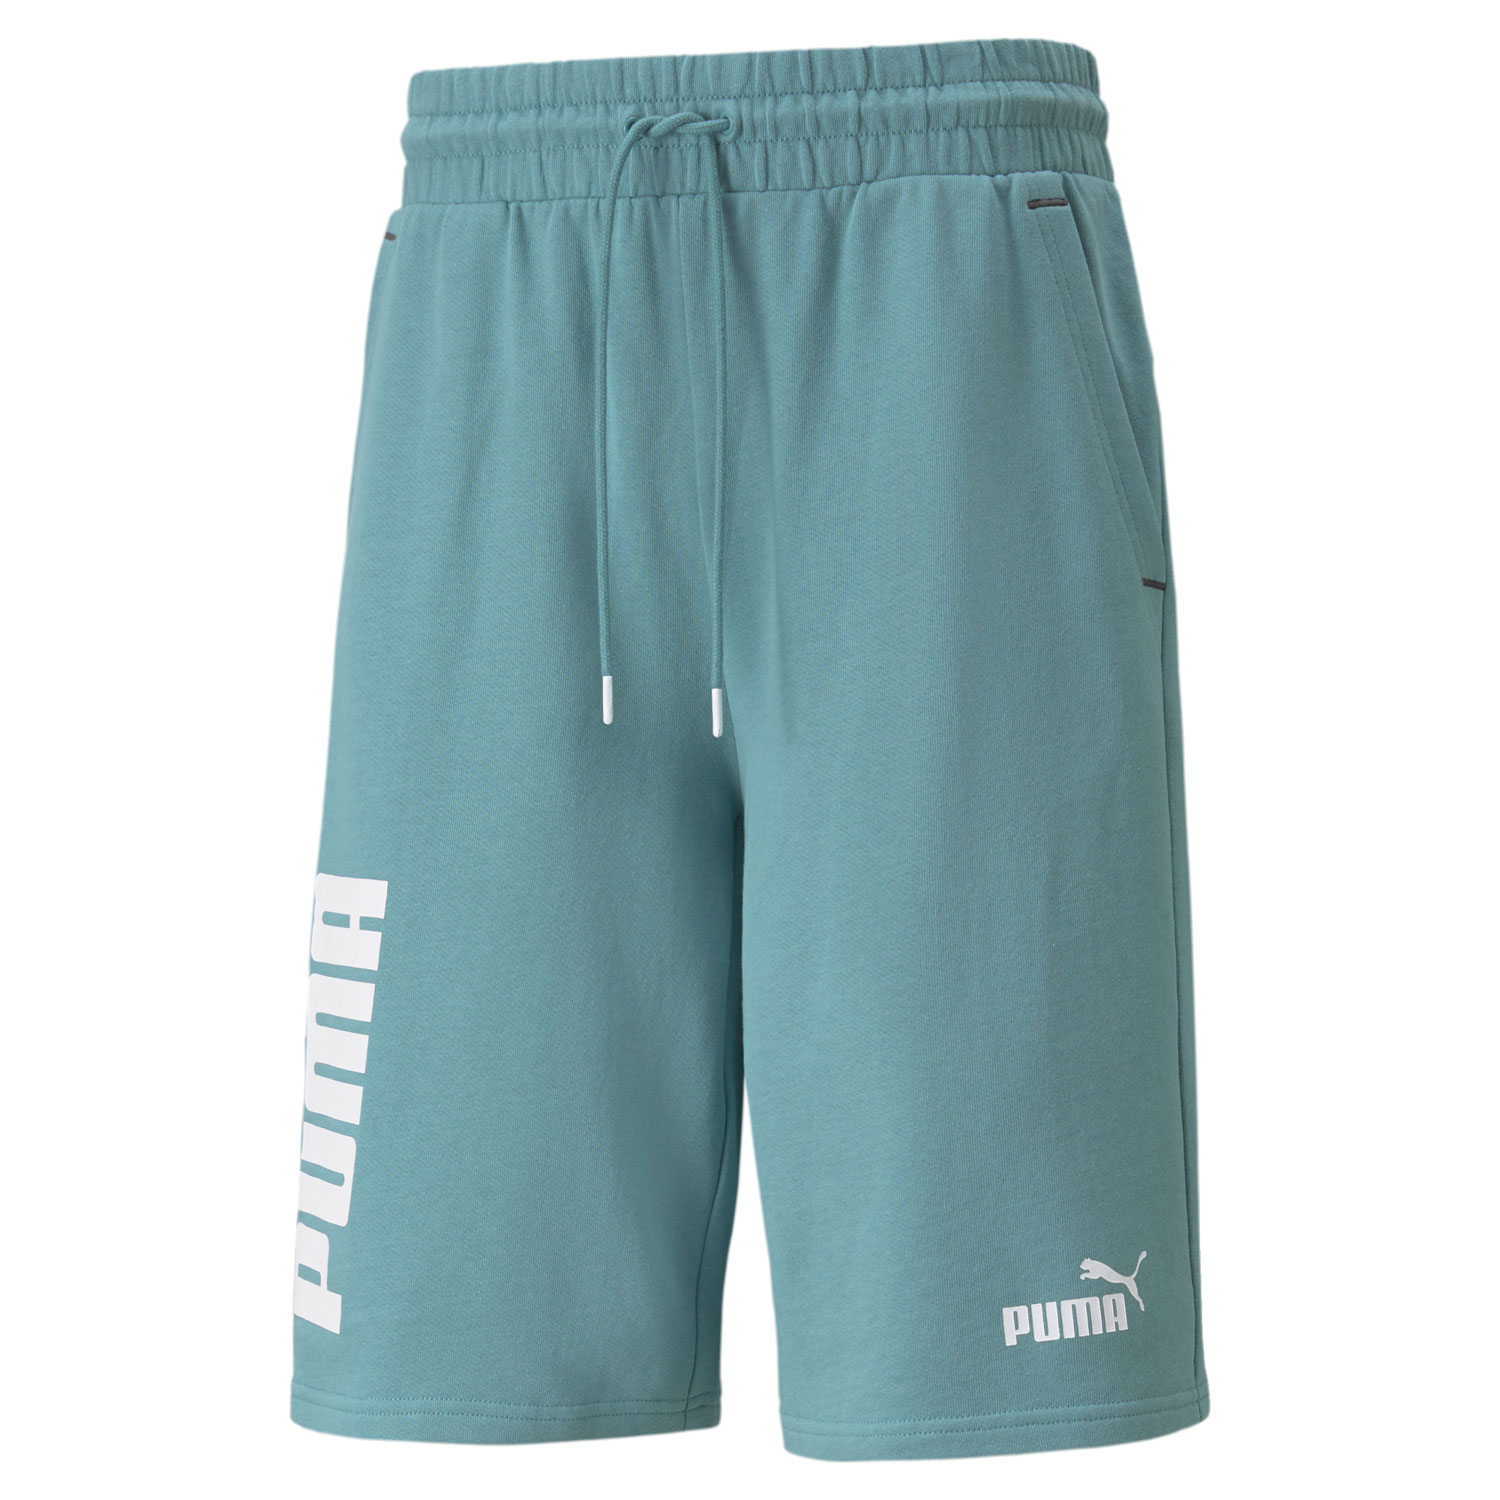 Шорты Puma Power Colourblocked Shorts - картинка